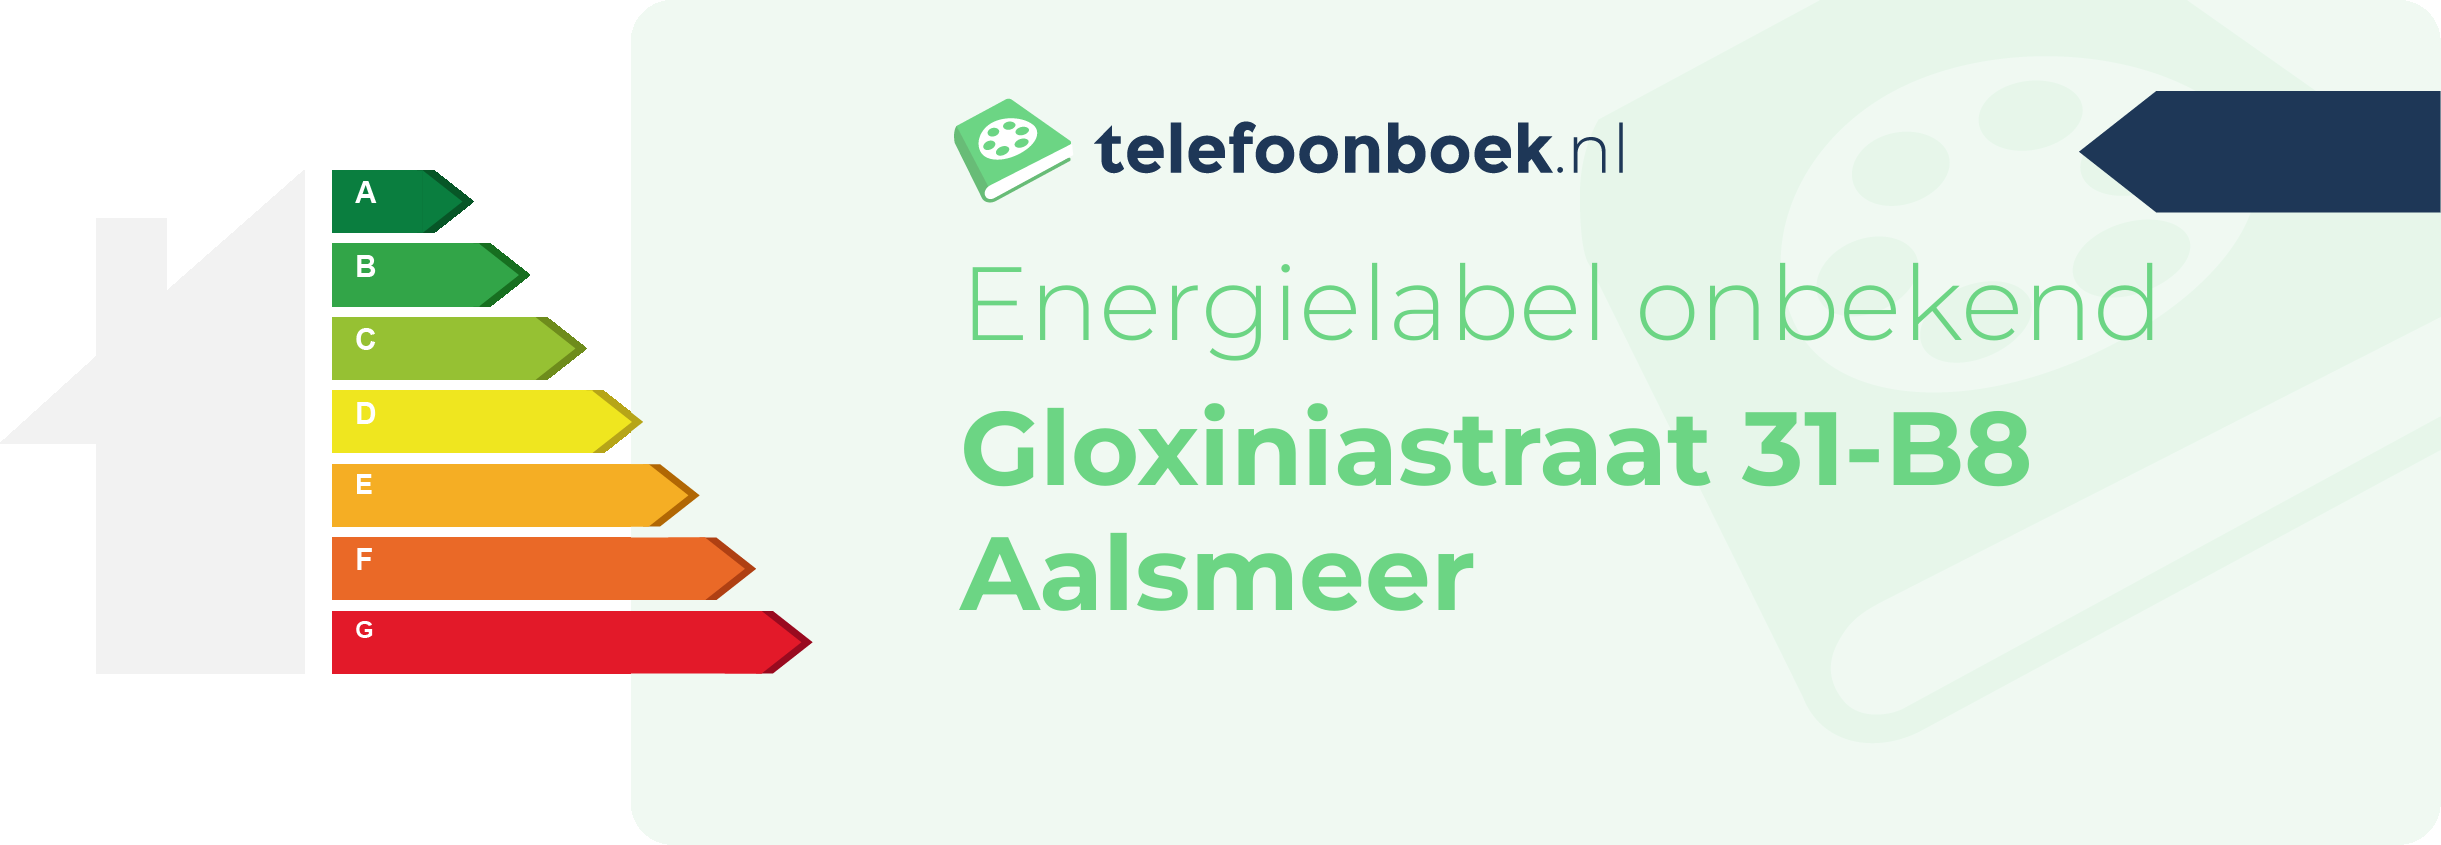 Energielabel Gloxiniastraat 31-B8 Aalsmeer